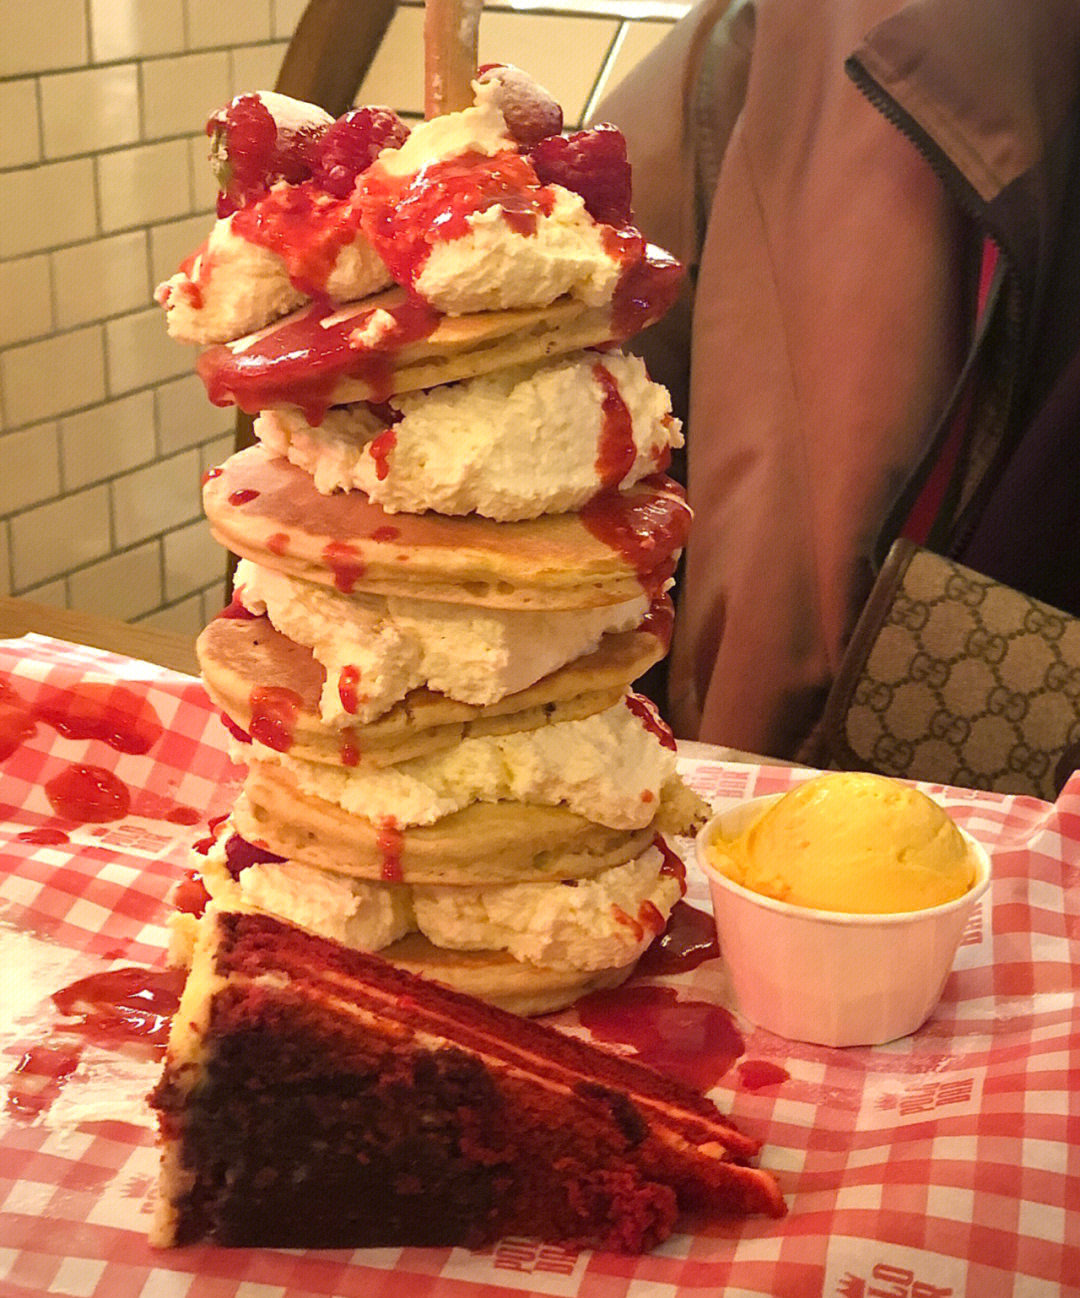 stack 松饼真的巨大 超可爱 是这家店最出名的 奶油草莓松饼塔 冰激凌